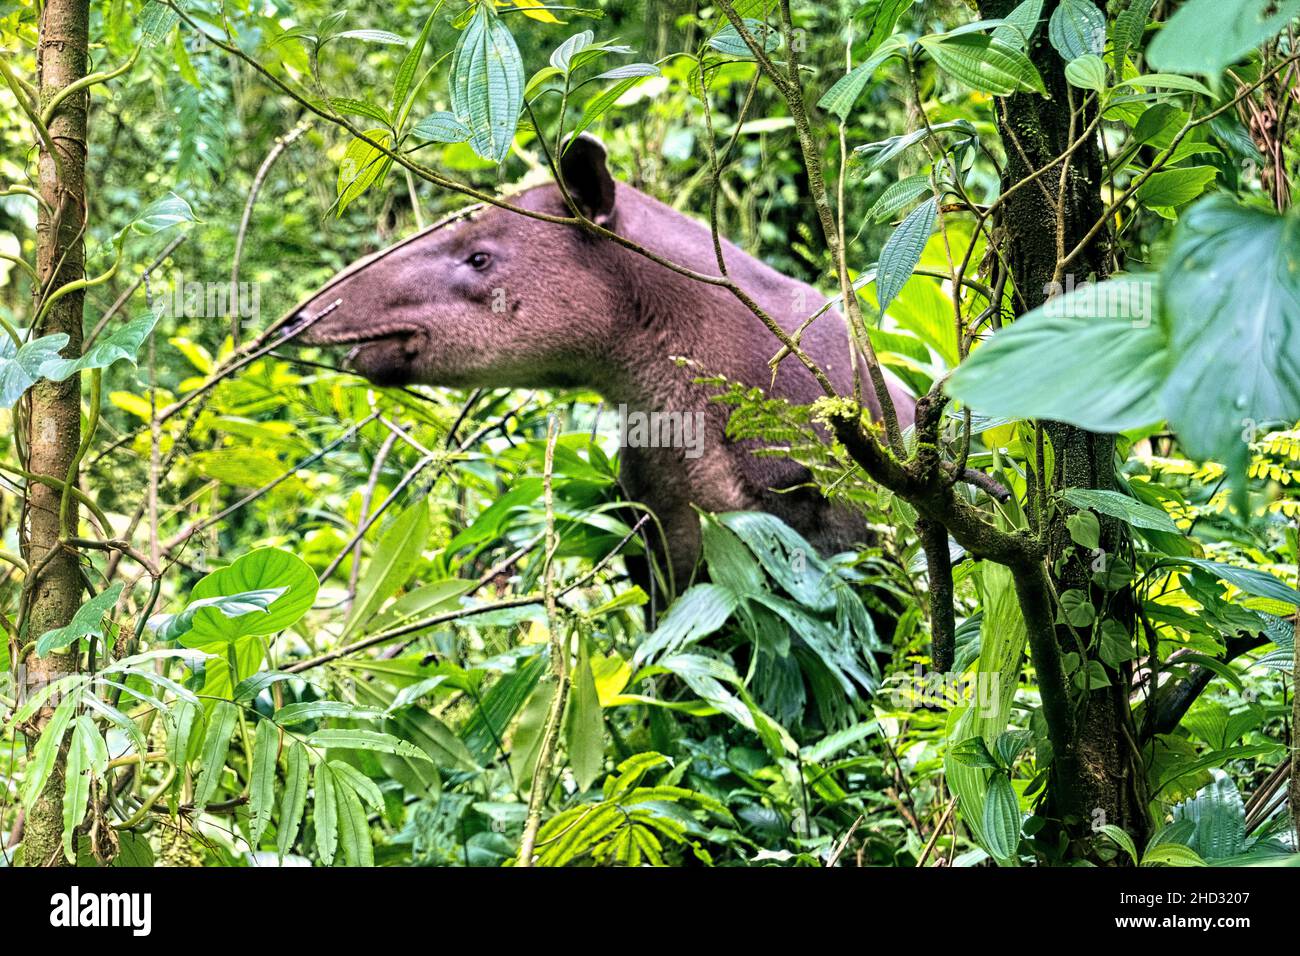 Rare sighting of a Baird's tapir (Tapirus bairdii), Tenorio Volcano National Park, Guanacaste, Costa Rica Stock Photo